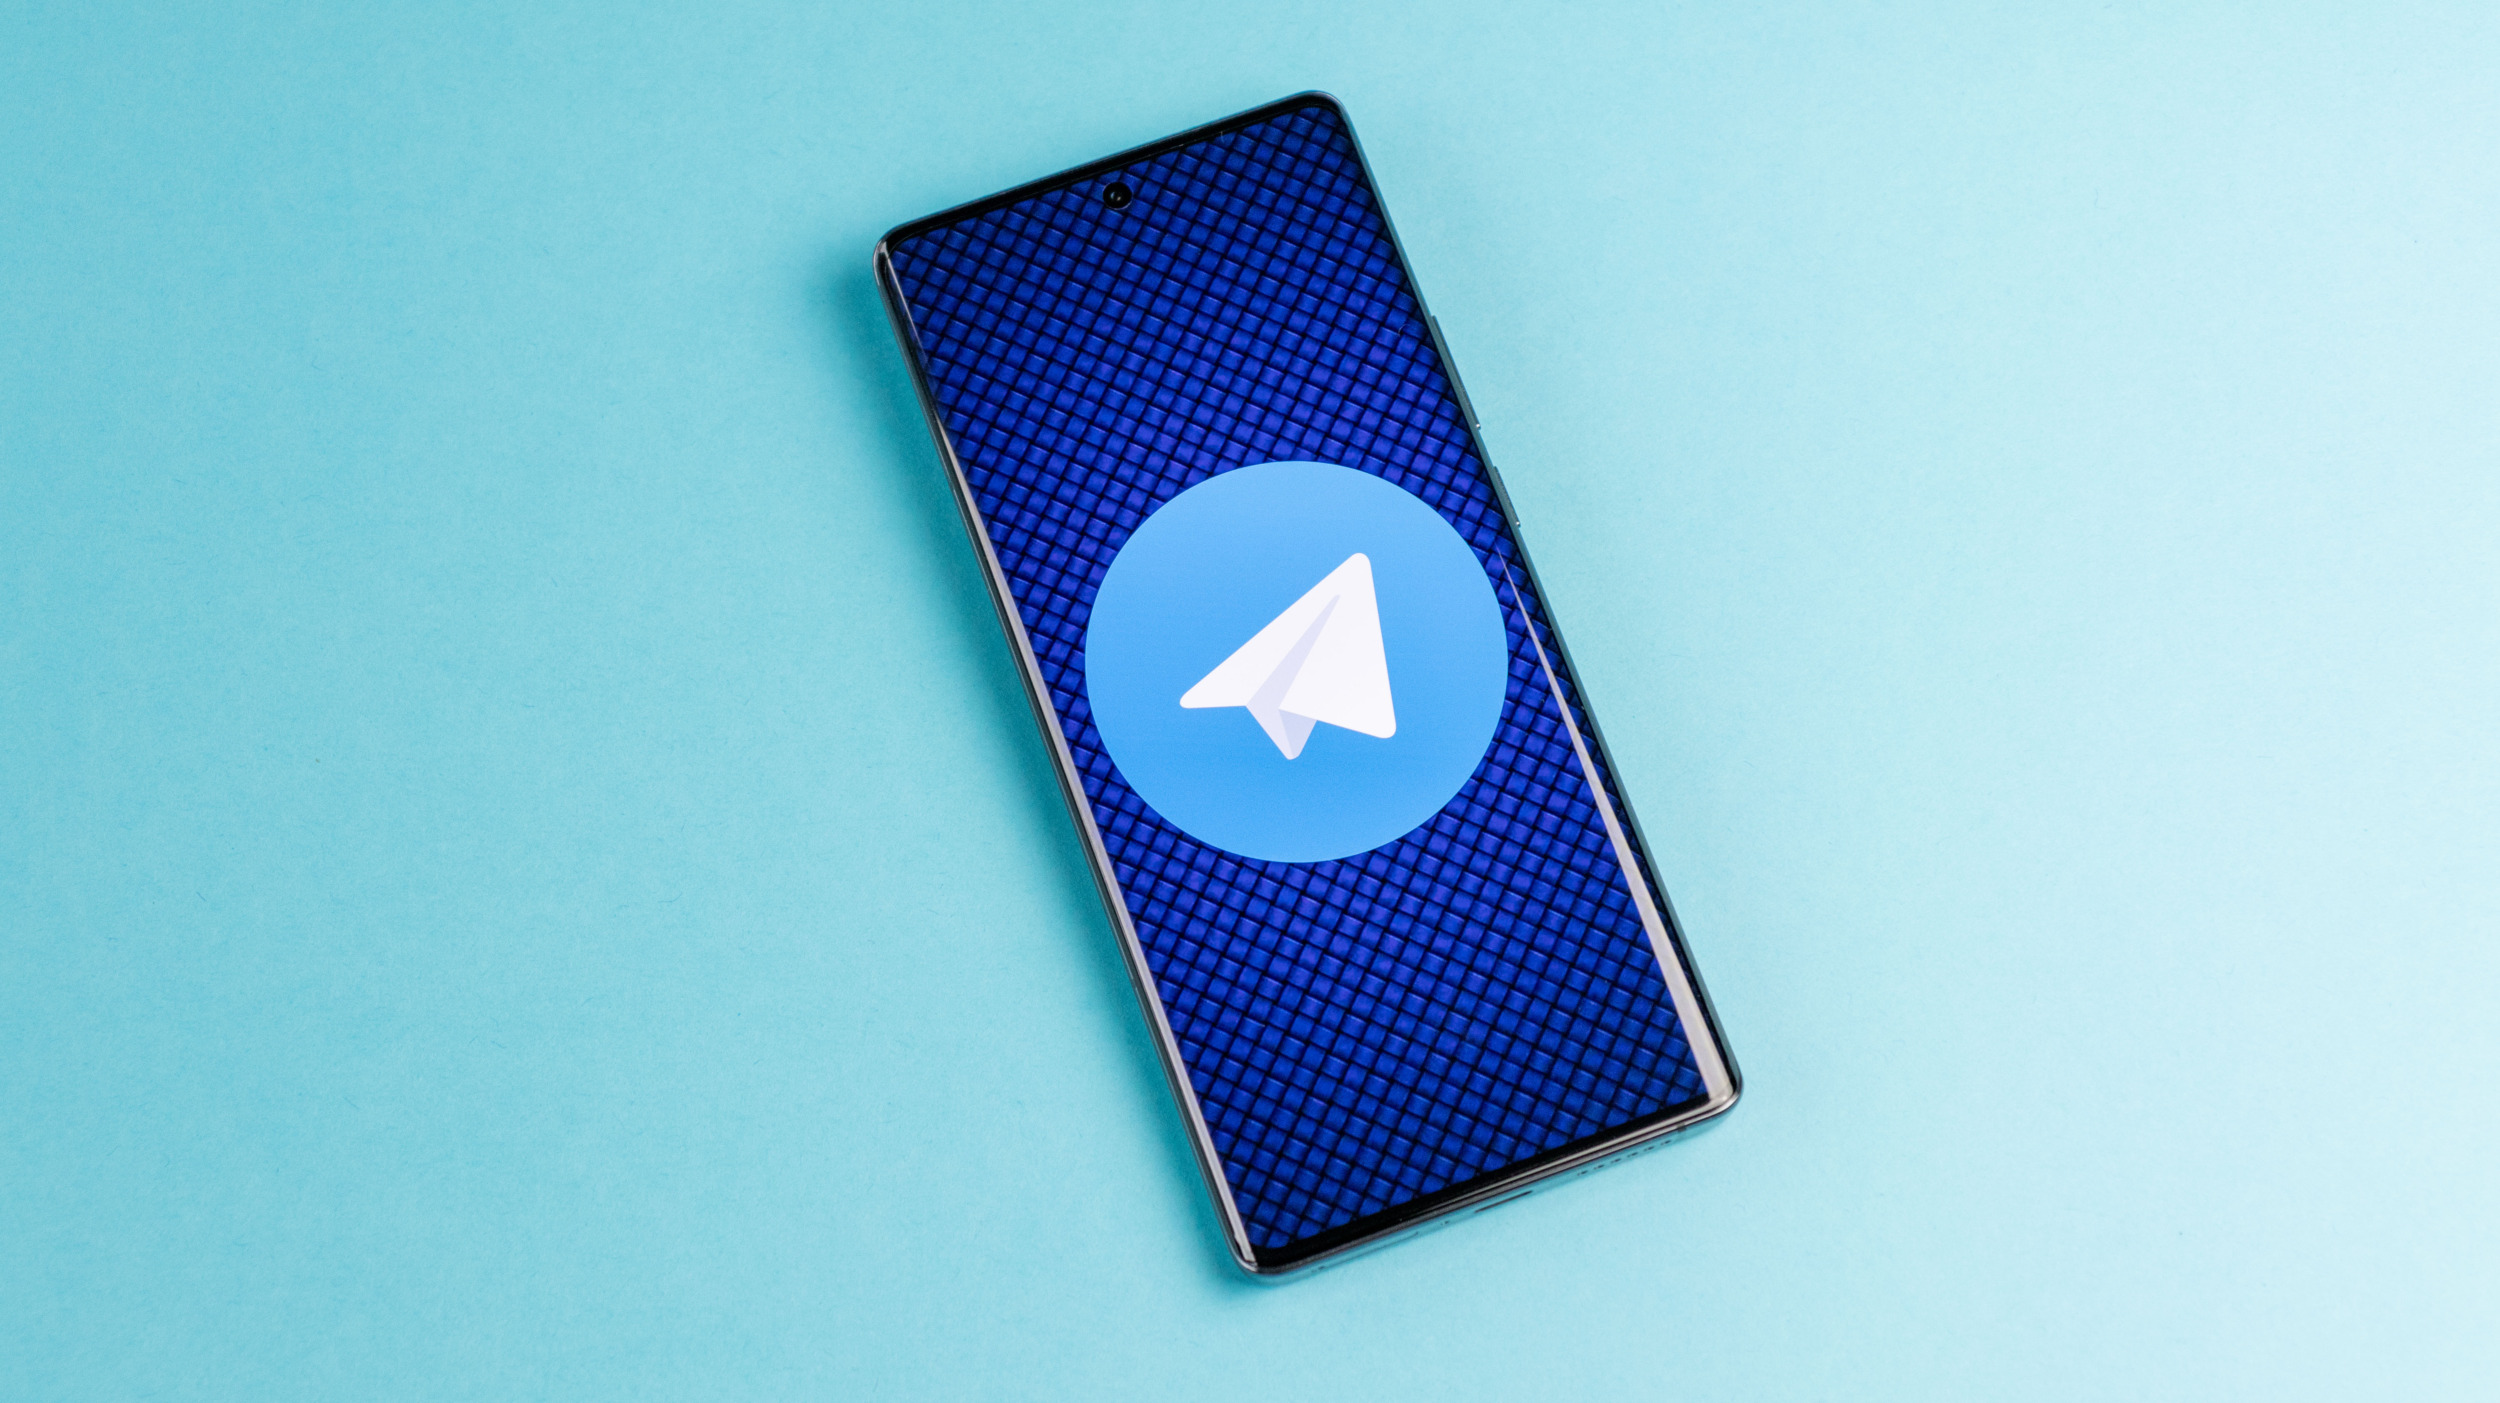 Dejte si pozor na falešné Telegram aplikace v obchodě Google Play